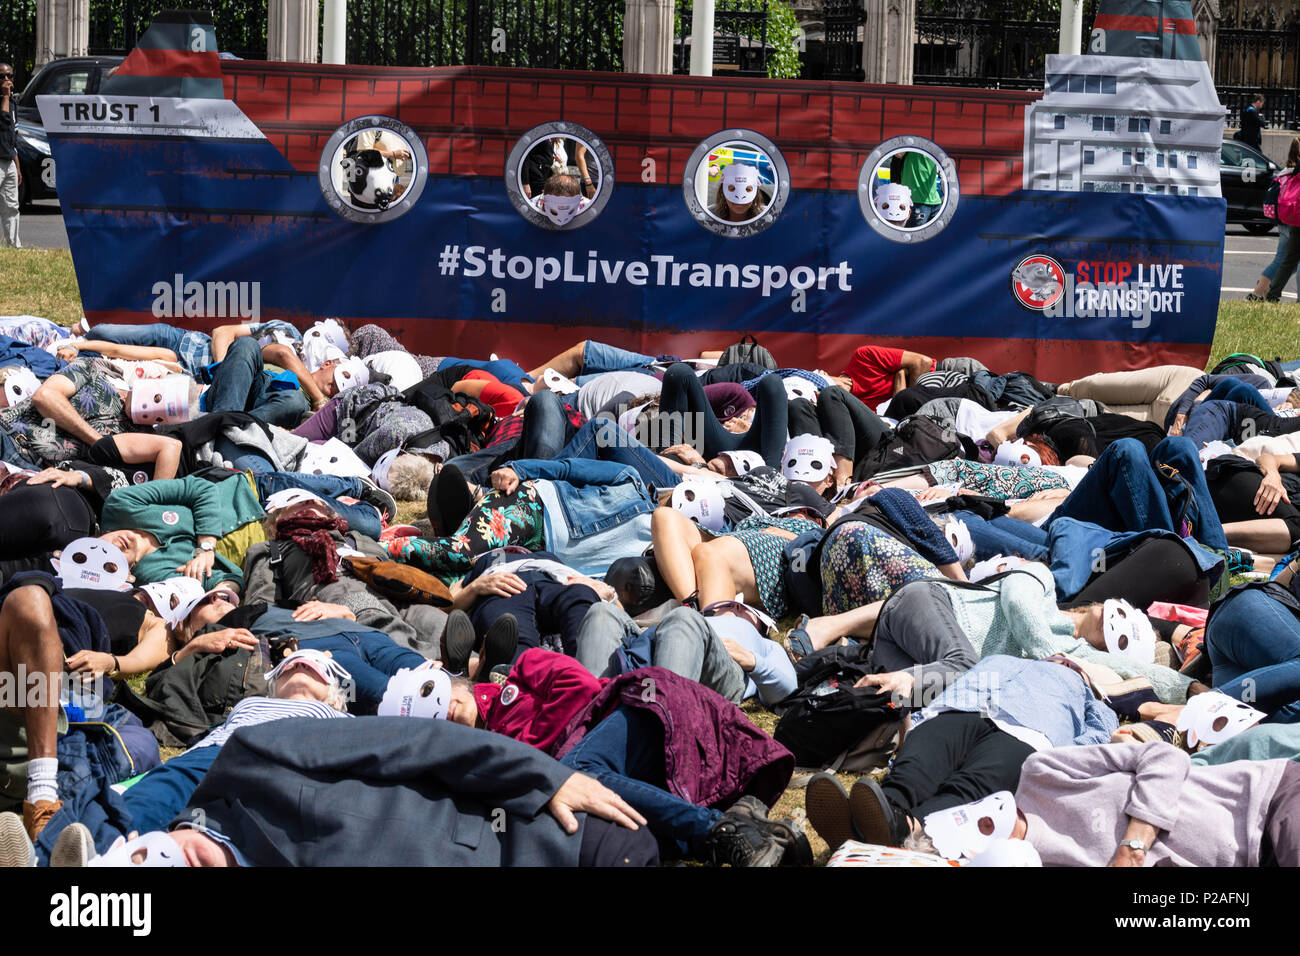 Londres 14 juin 2018, fin du transport d'animaux vivants protester sur la place du Parlement, Londres d'une matrice qui par des militants, Ian Davidson Crédit/Alamy Live News Banque D'Images